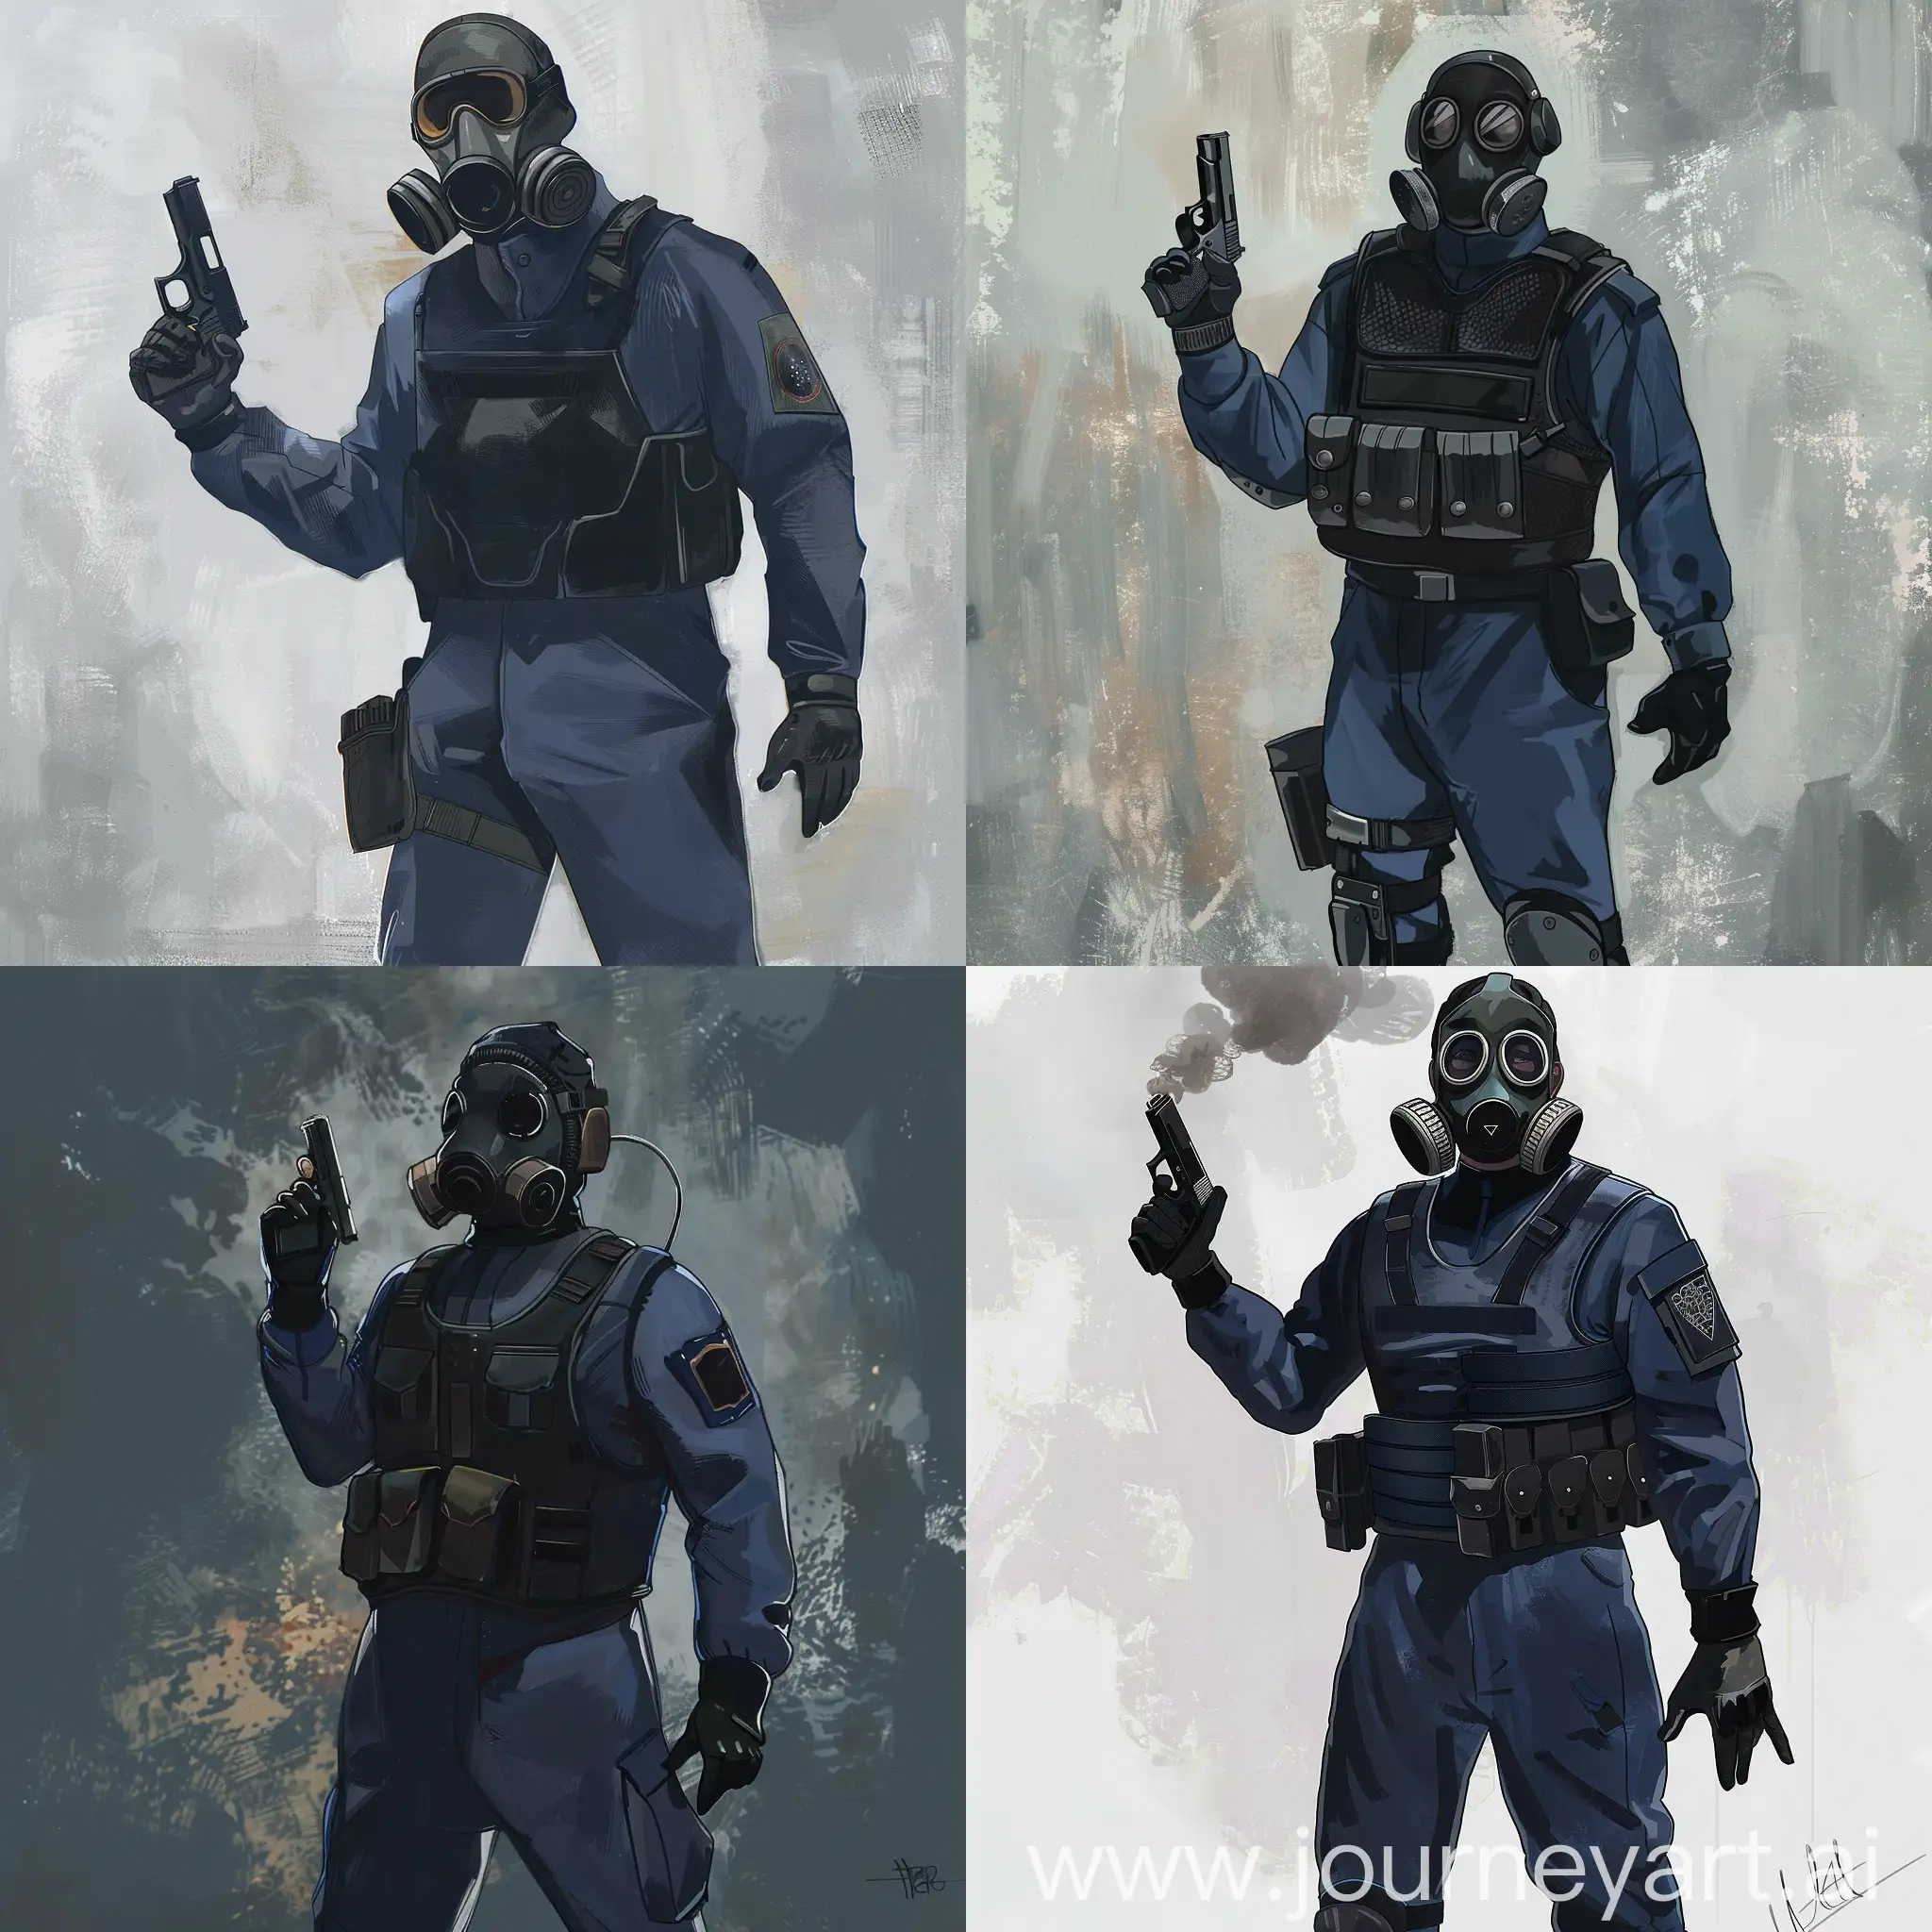 Concept art, gasmask, black blue uniform, special force vest, pistol in one hand.